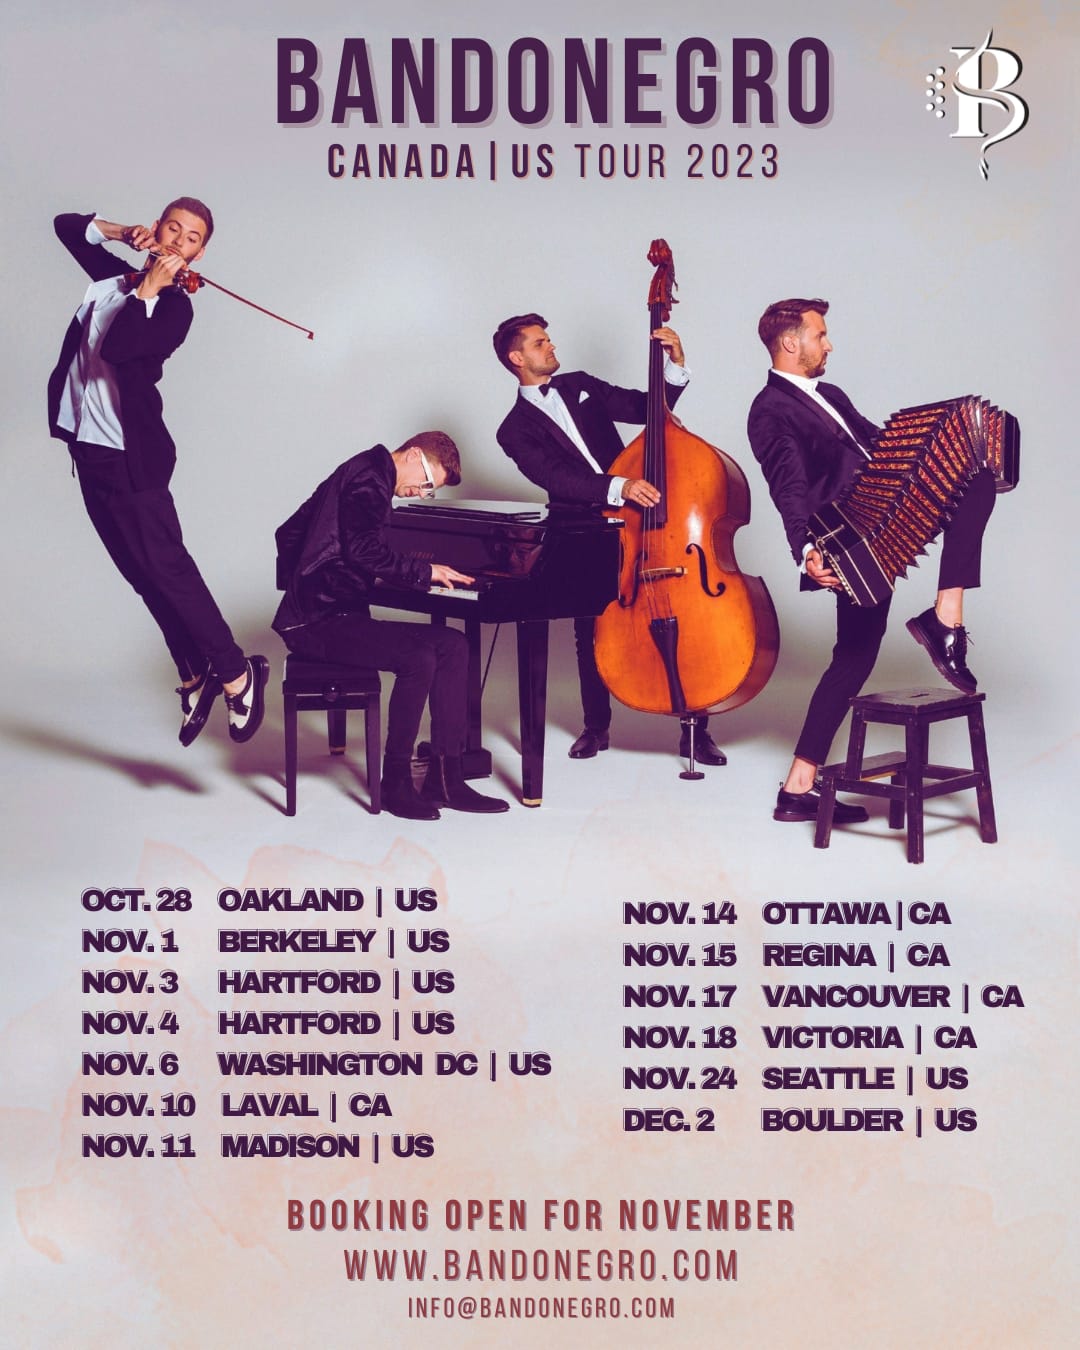 USA & CANADA TOUR – Madison